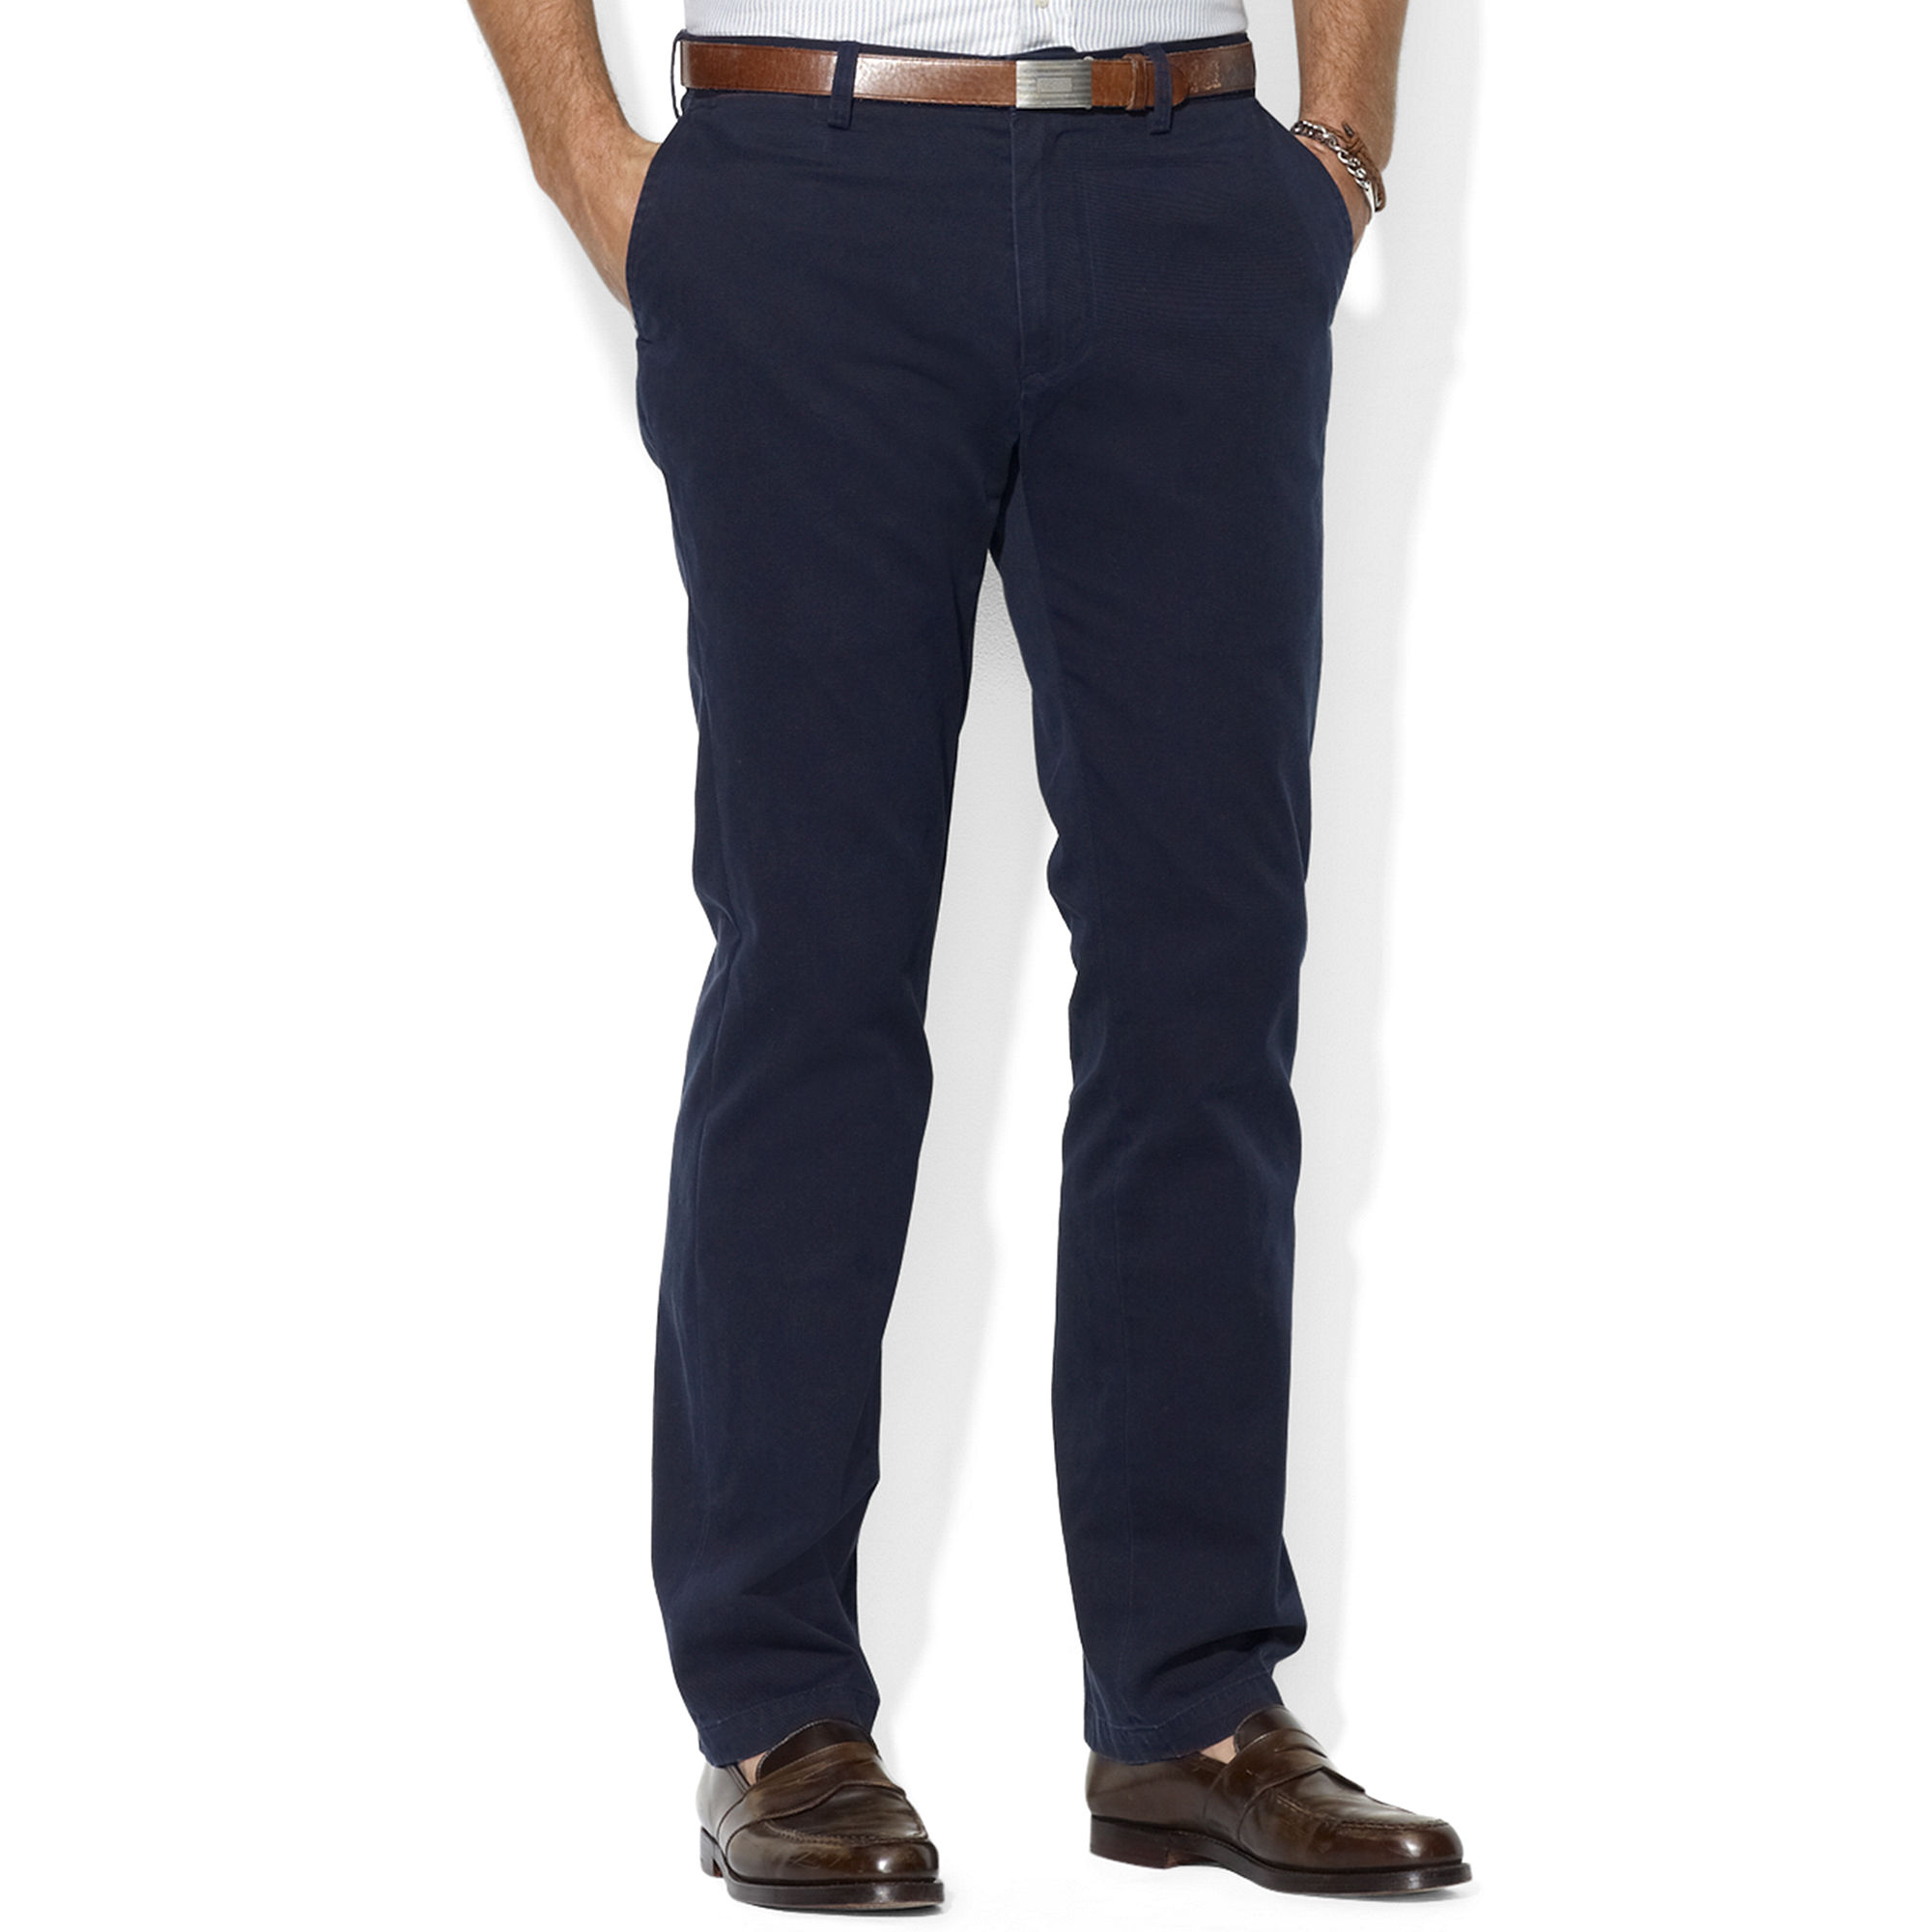 Polo ralph lauren Men's Core Pants, Classic-fit Flat Front Chino Pants ...